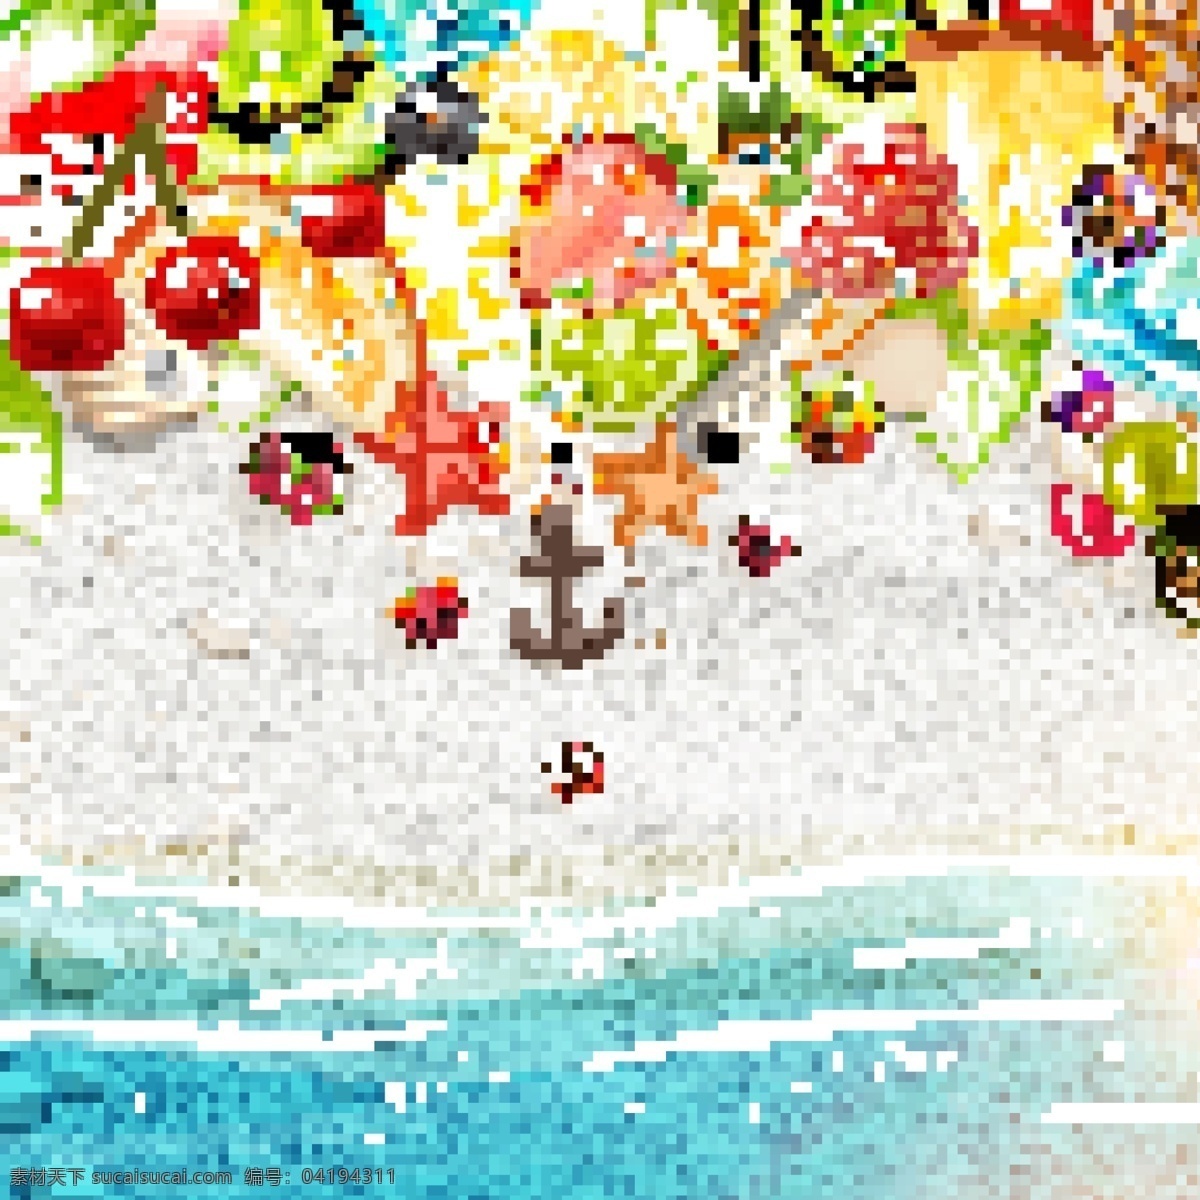 夏日 沙滩 宣传 海报 设计素材 矢量 背景 花纹 梦幻唯美 展示牌 水果 草莓 菠萝 橘子 橙子 海星 底纹边框 背景底纹